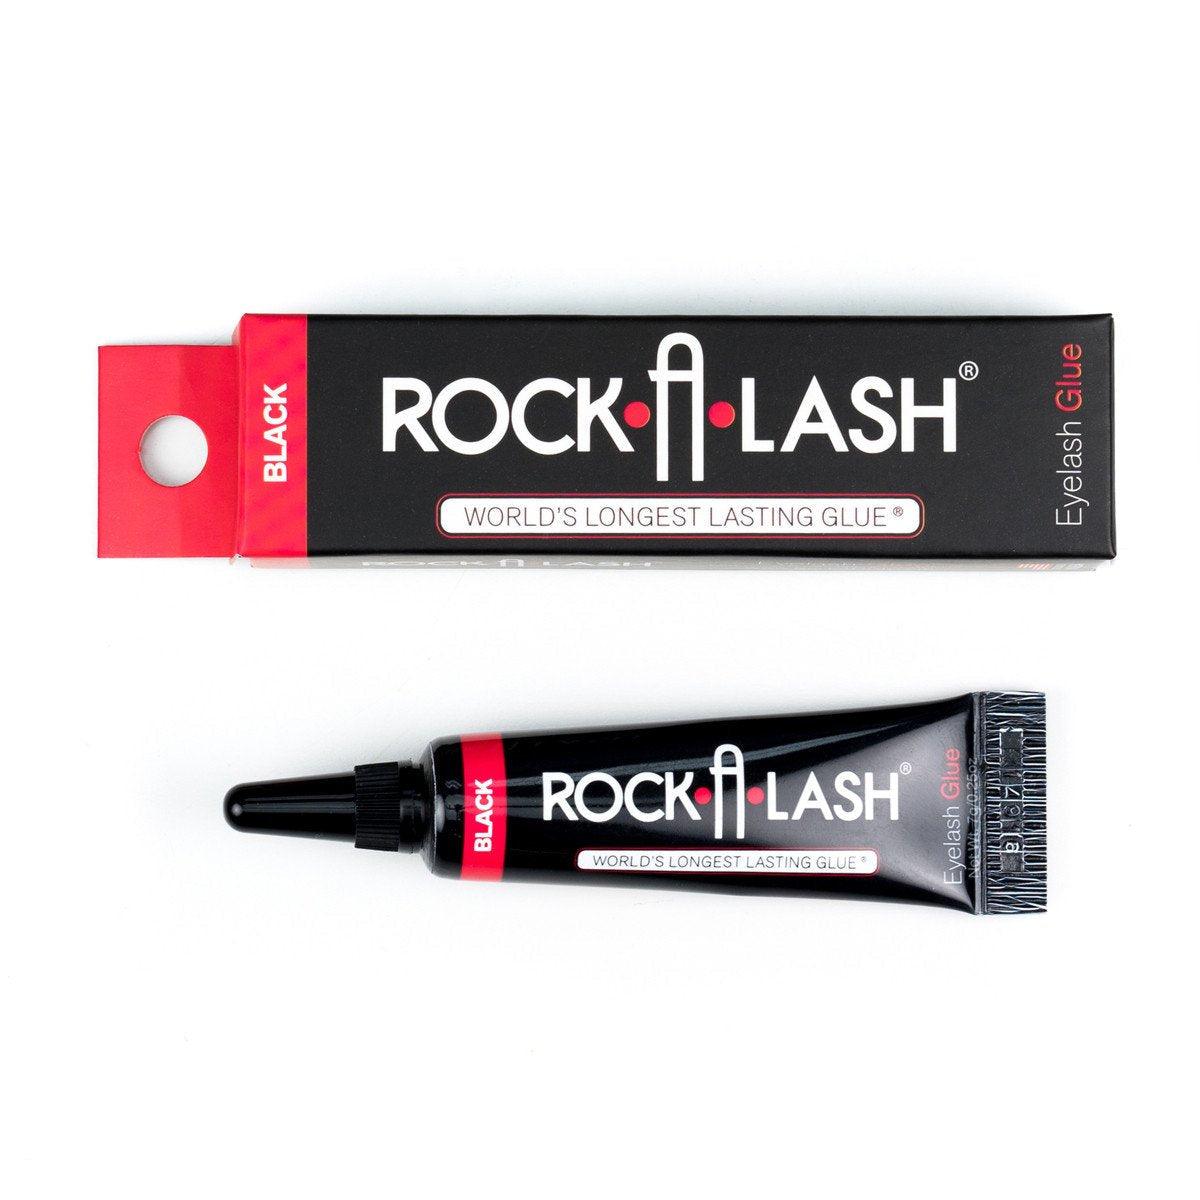 Rockstar Rock A Lash Glue - Take A Peek